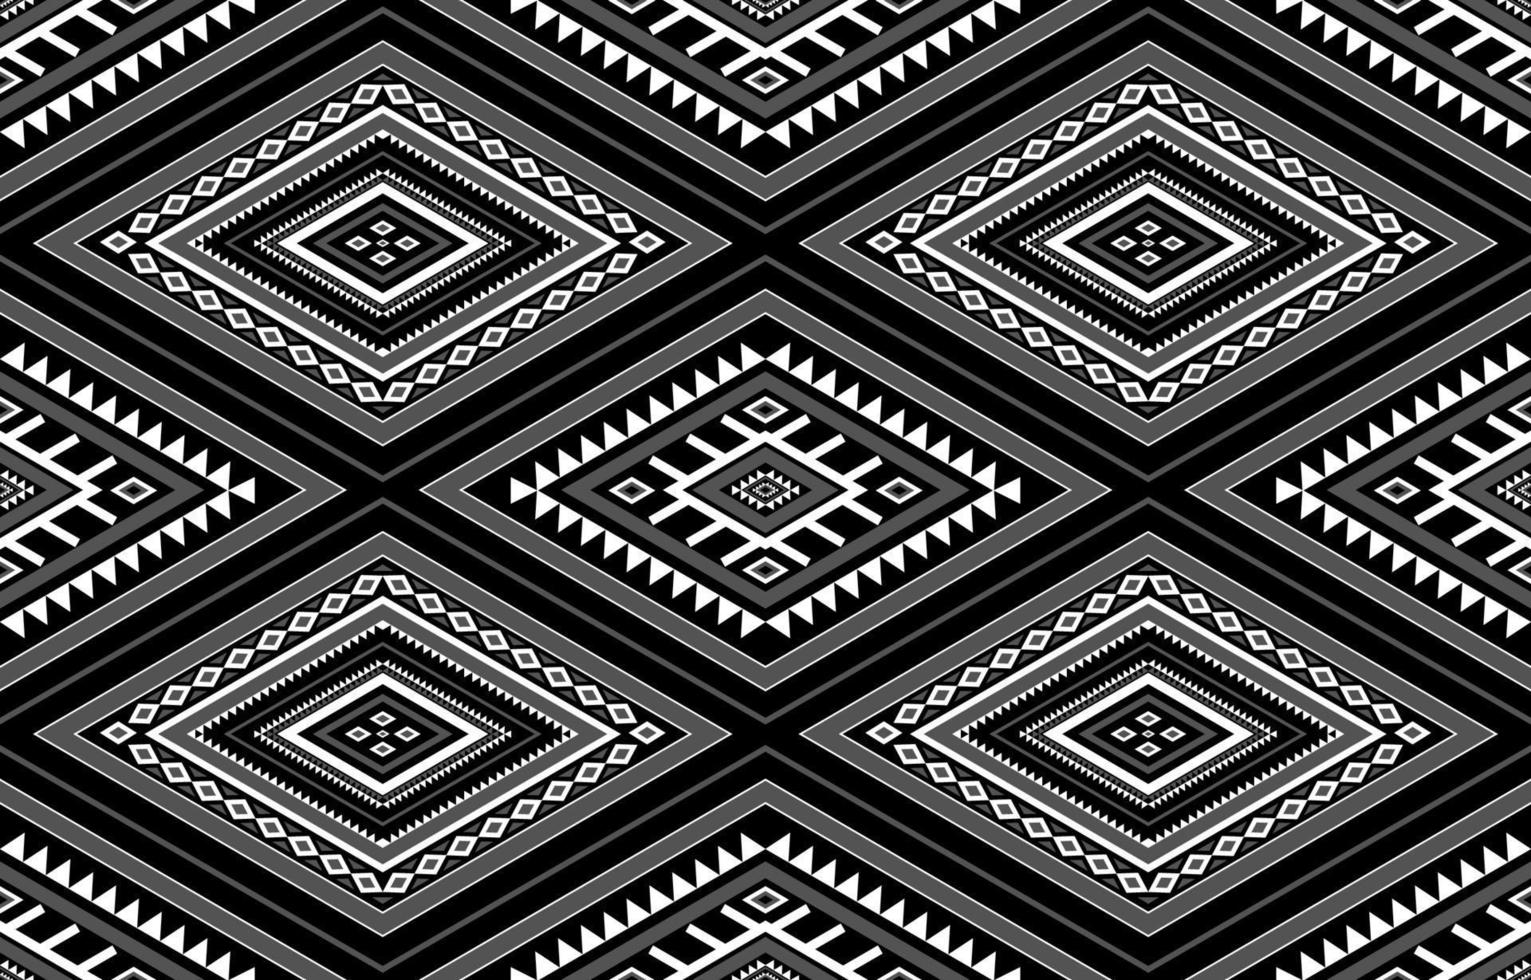 gemetrisch etnisch oosters naadloos patroon traditioneel. ontwerp voor achtergrond,tapijt,behang,kleding,inwikkeling,batic,stof,vector illustraion.embroidery stijl. vector